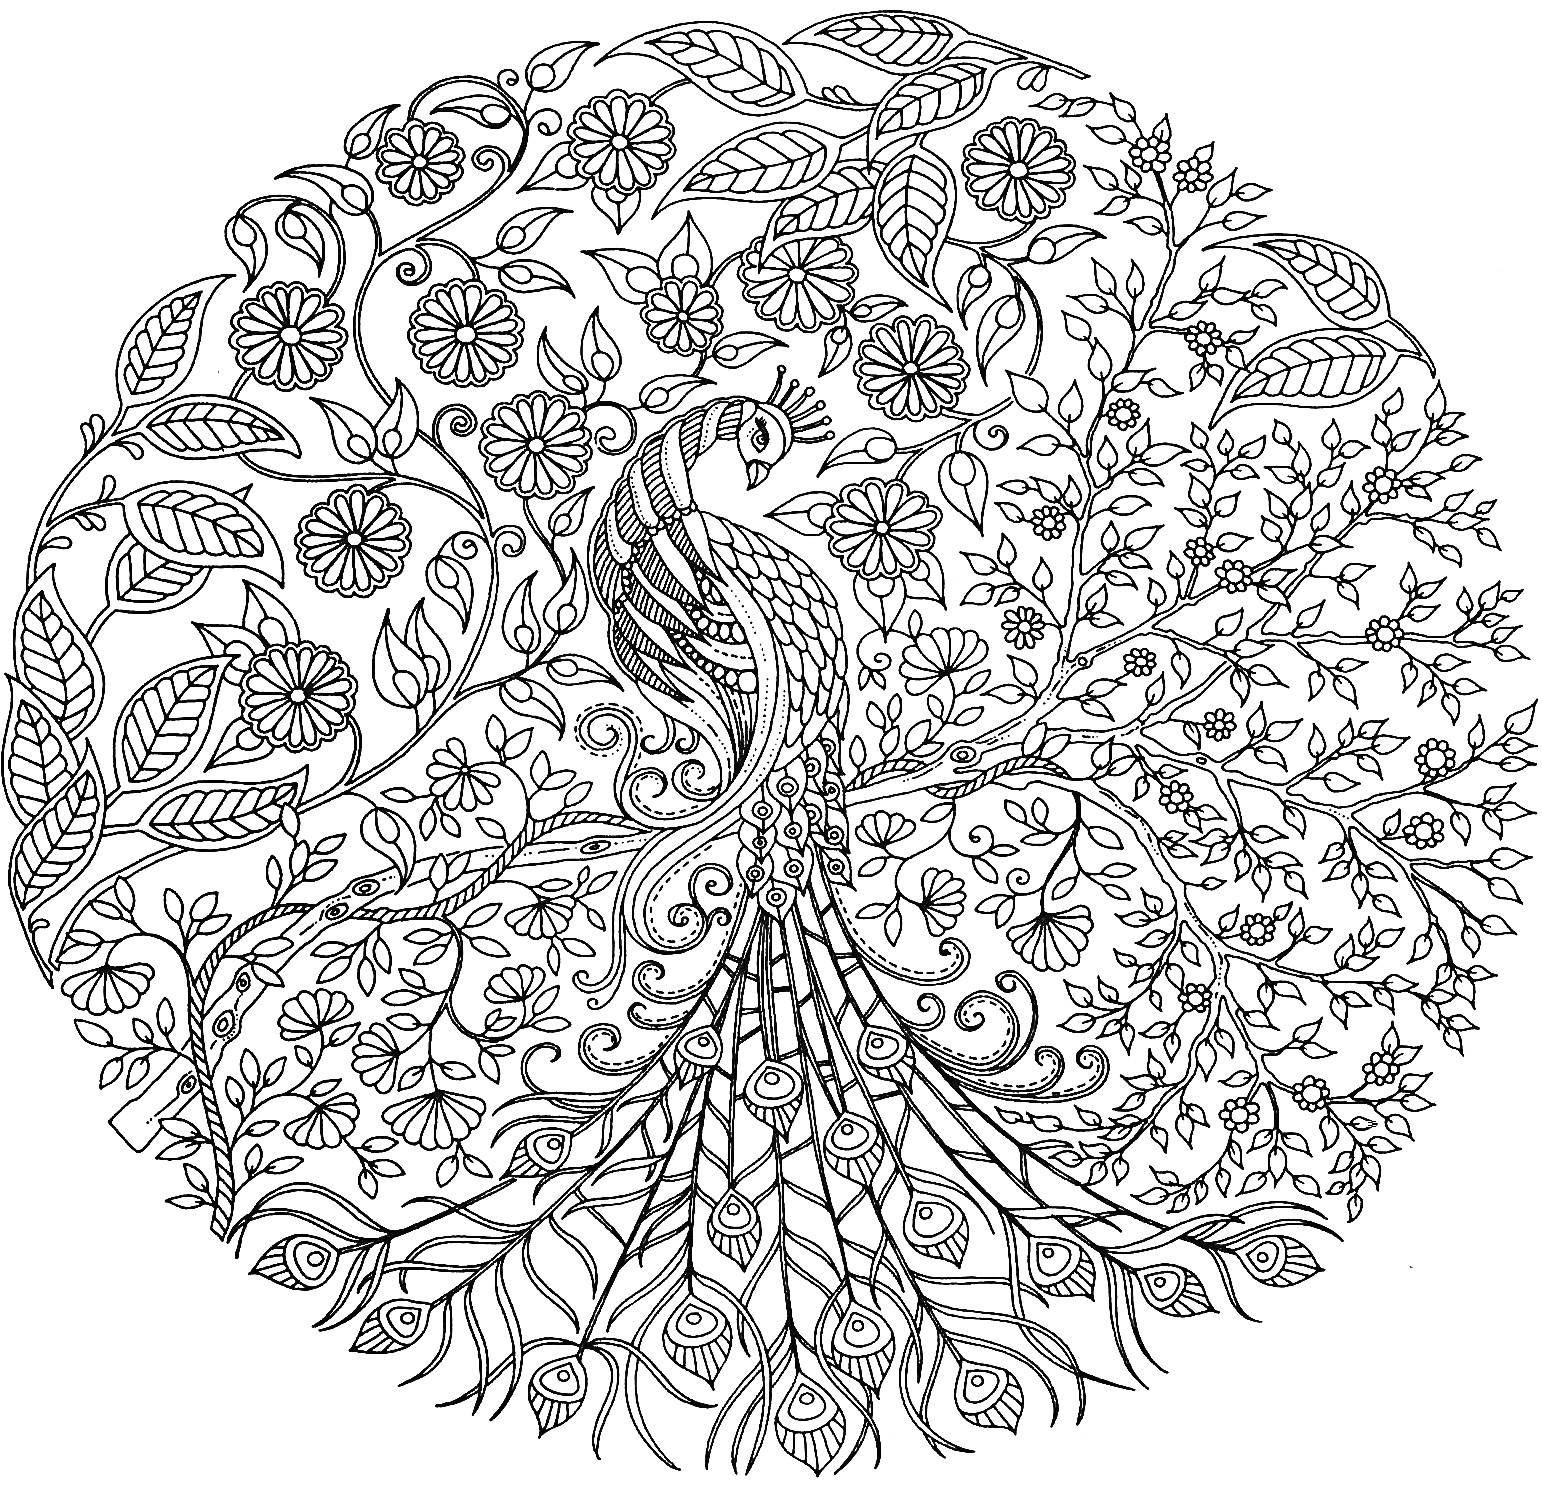 Раскраска Антистресс раскраска с павлином, листьями и цветами